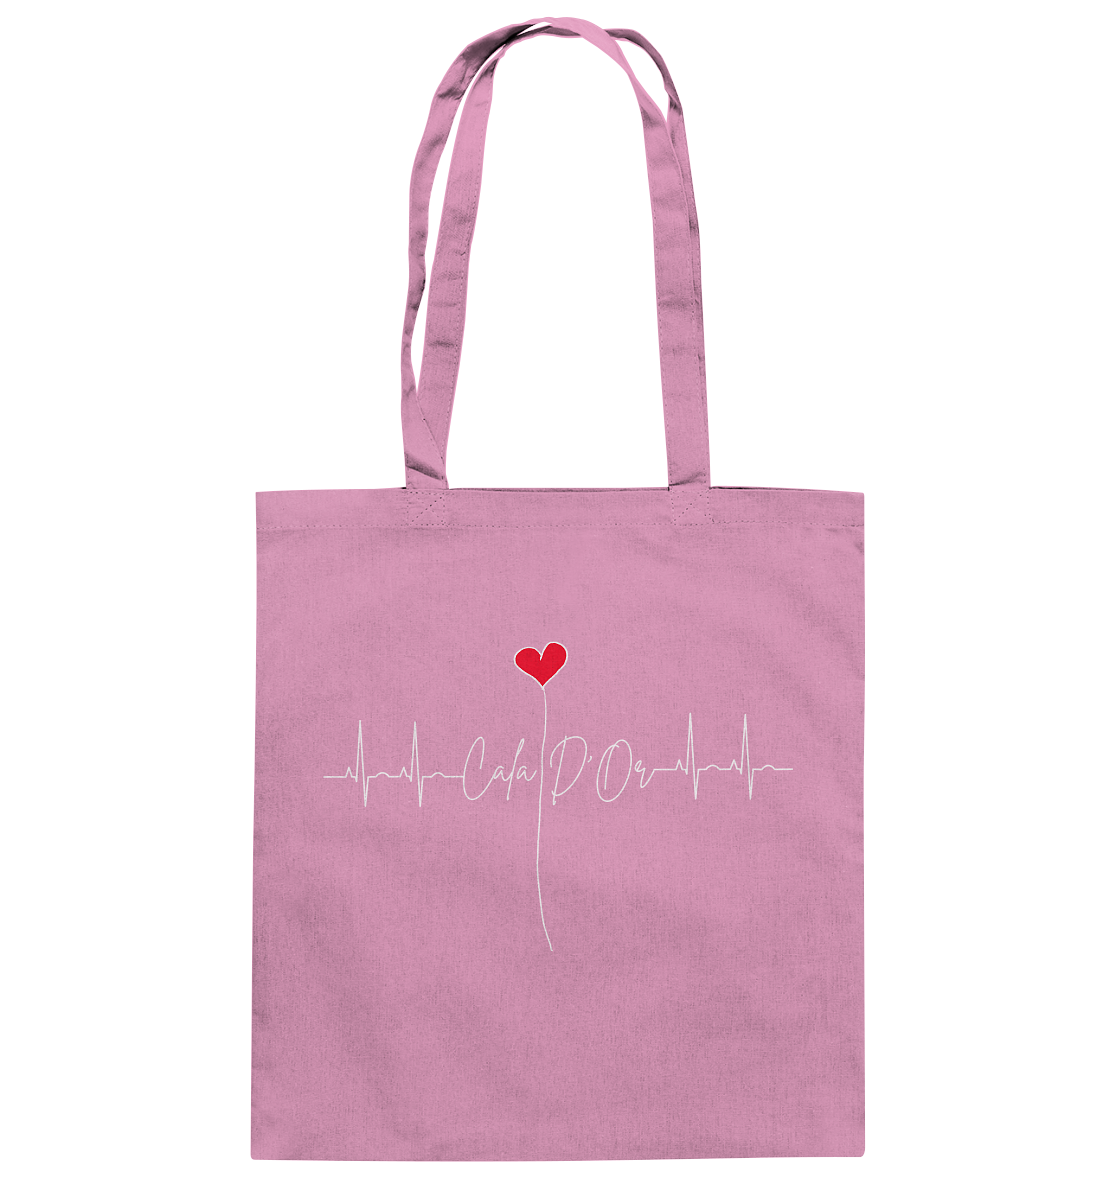 Rosa Baumwolltragetaschen mit Aufschrift Cala D'Or und einem Herz